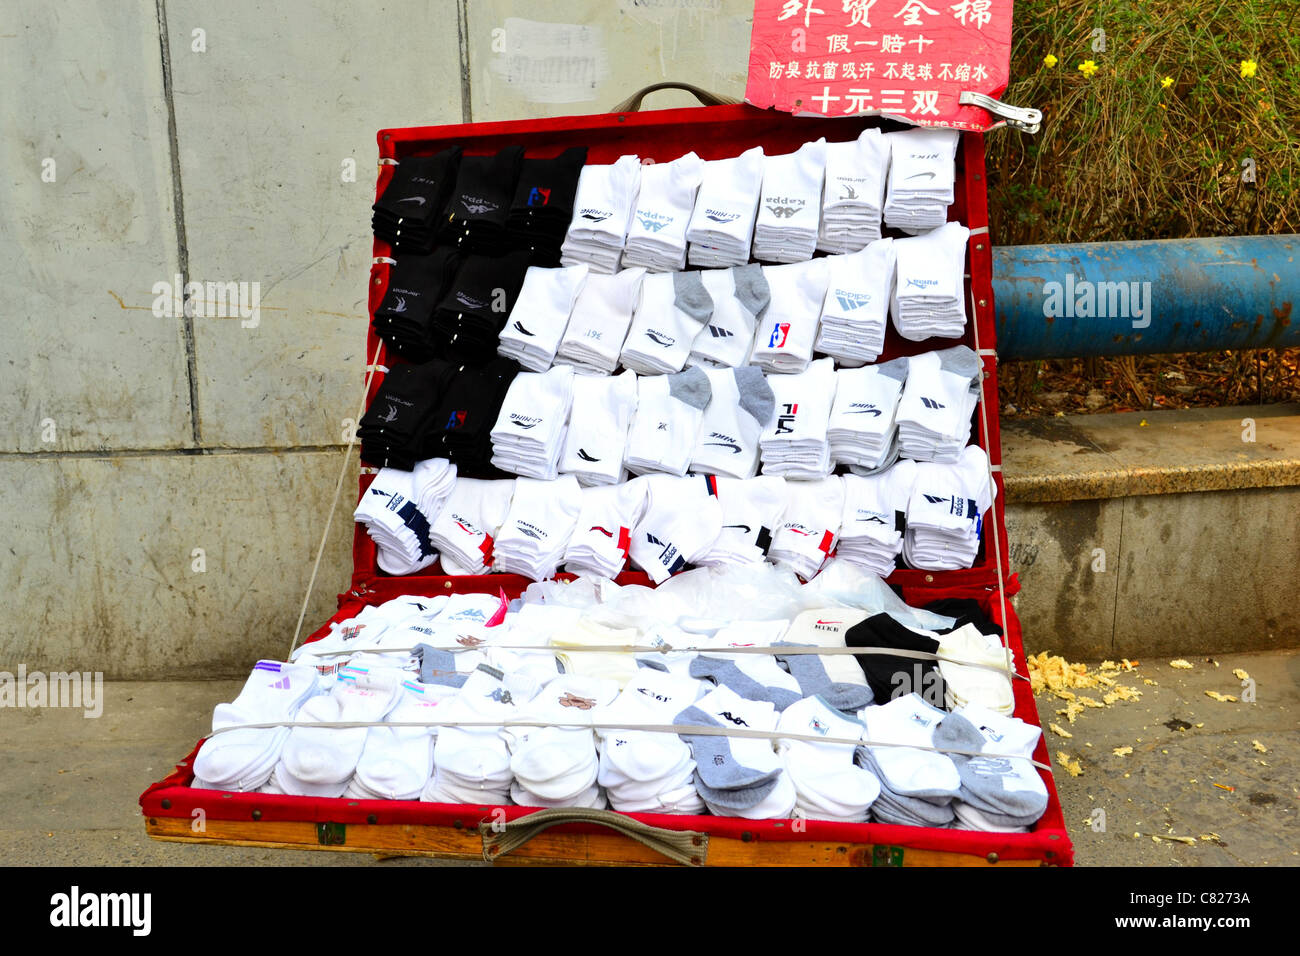 Neat cercando calzini dalle principali marche di essere venduti al di fuori di un box in una sudicia street. Foto Stock